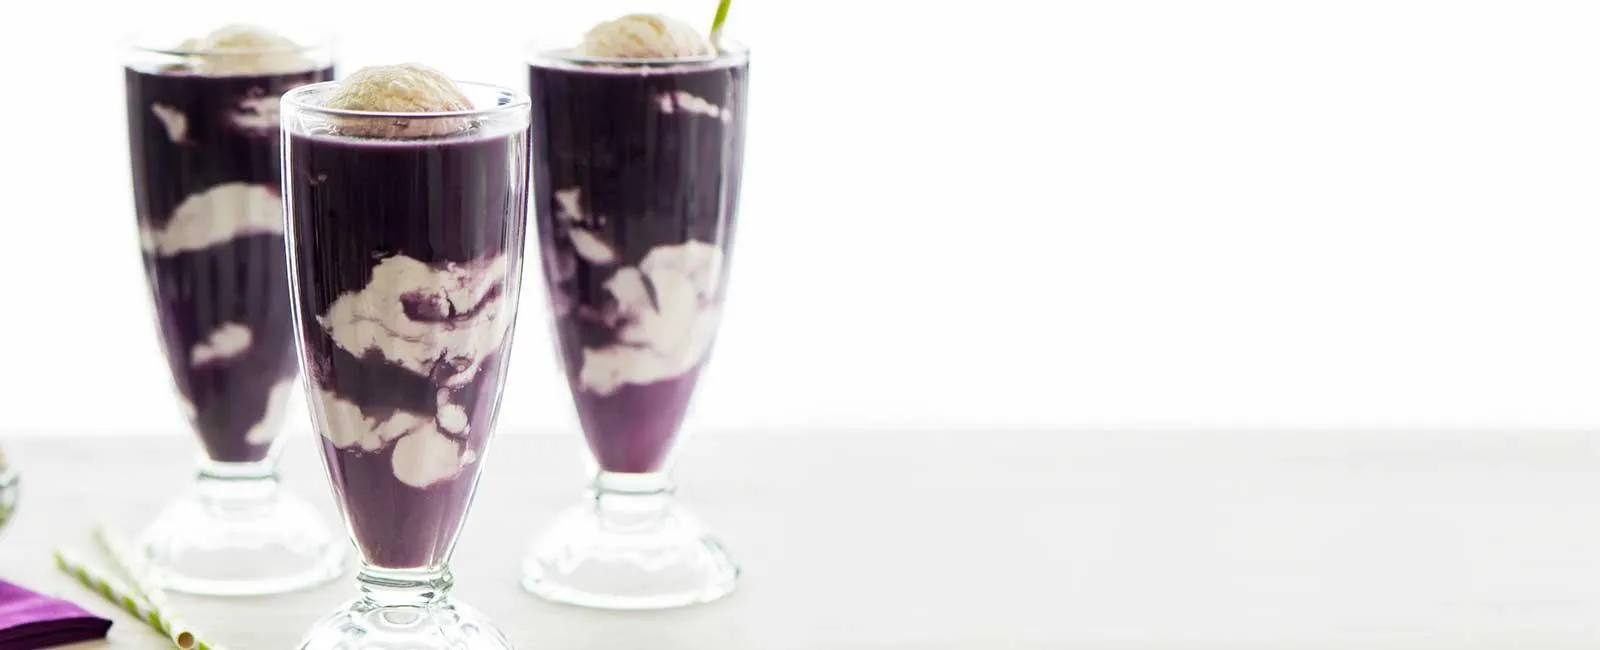 Purple Cow Ice Cream Float